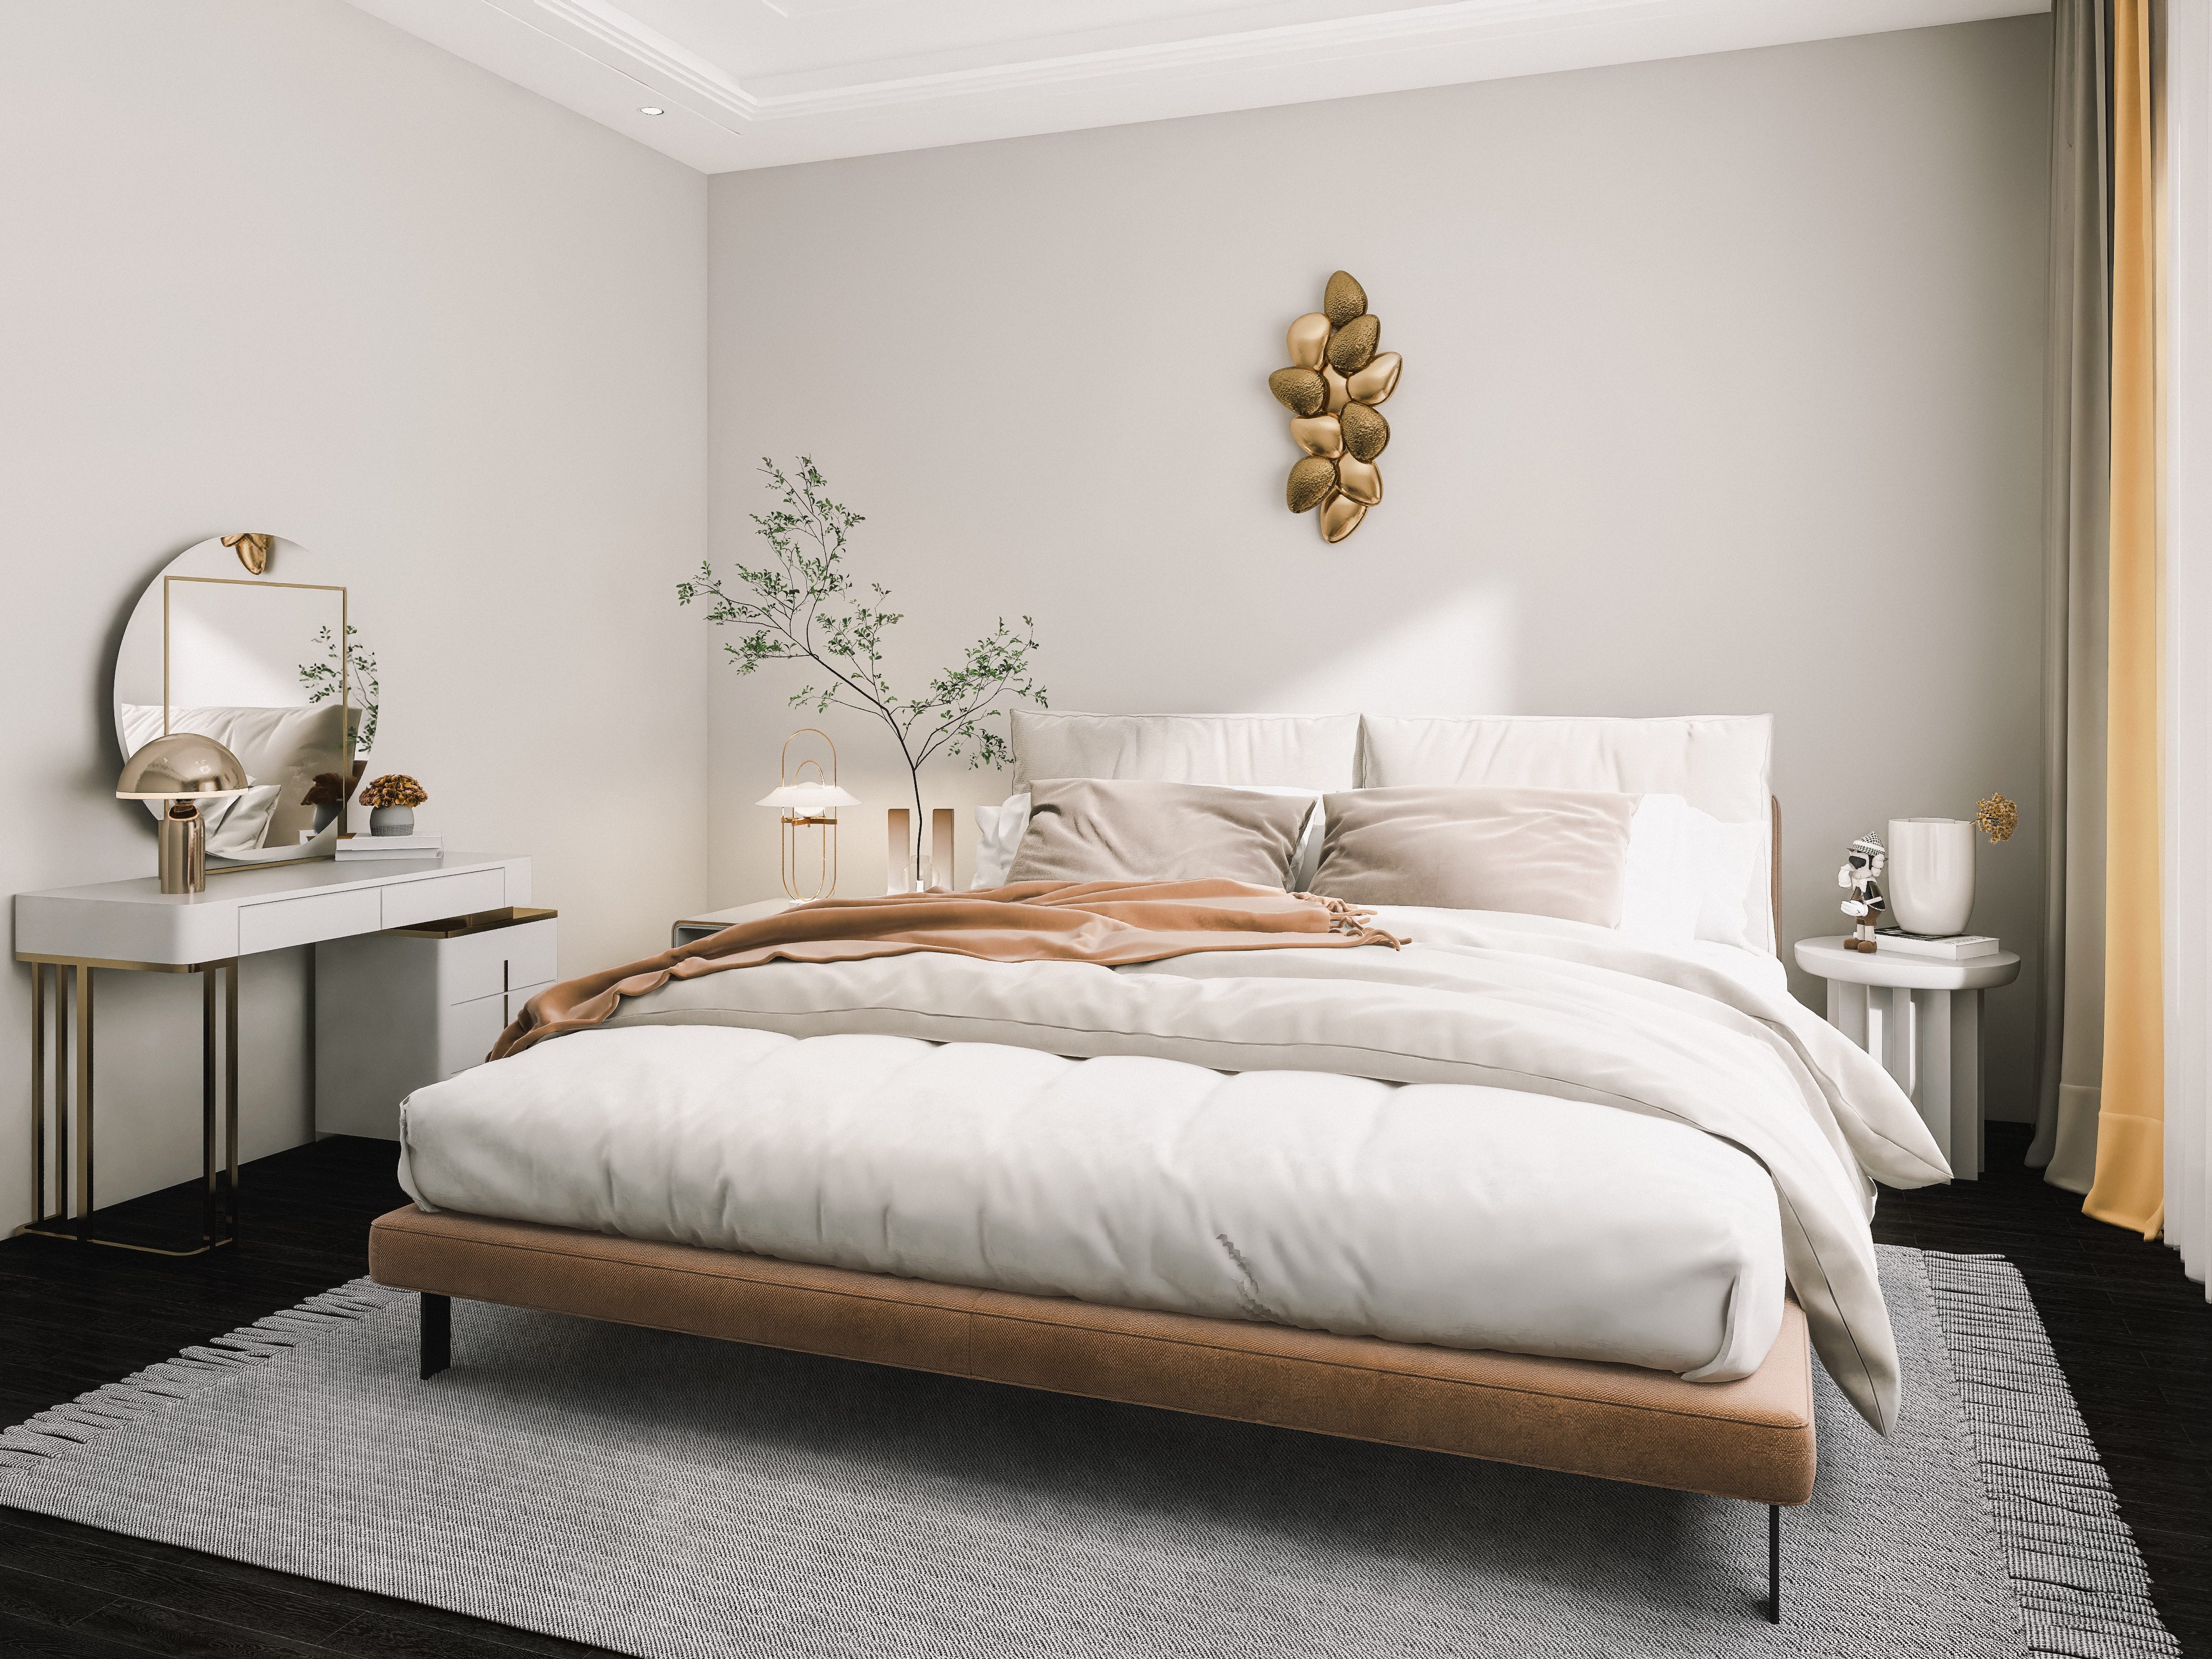 Ein Schlafzimmer mit grauen Wänden, neutraler Bettwäsche, einem grauen Teppich, einem weißen Waschtisch mit einem runden Spiegel darauf und erdigen Dekorationen.